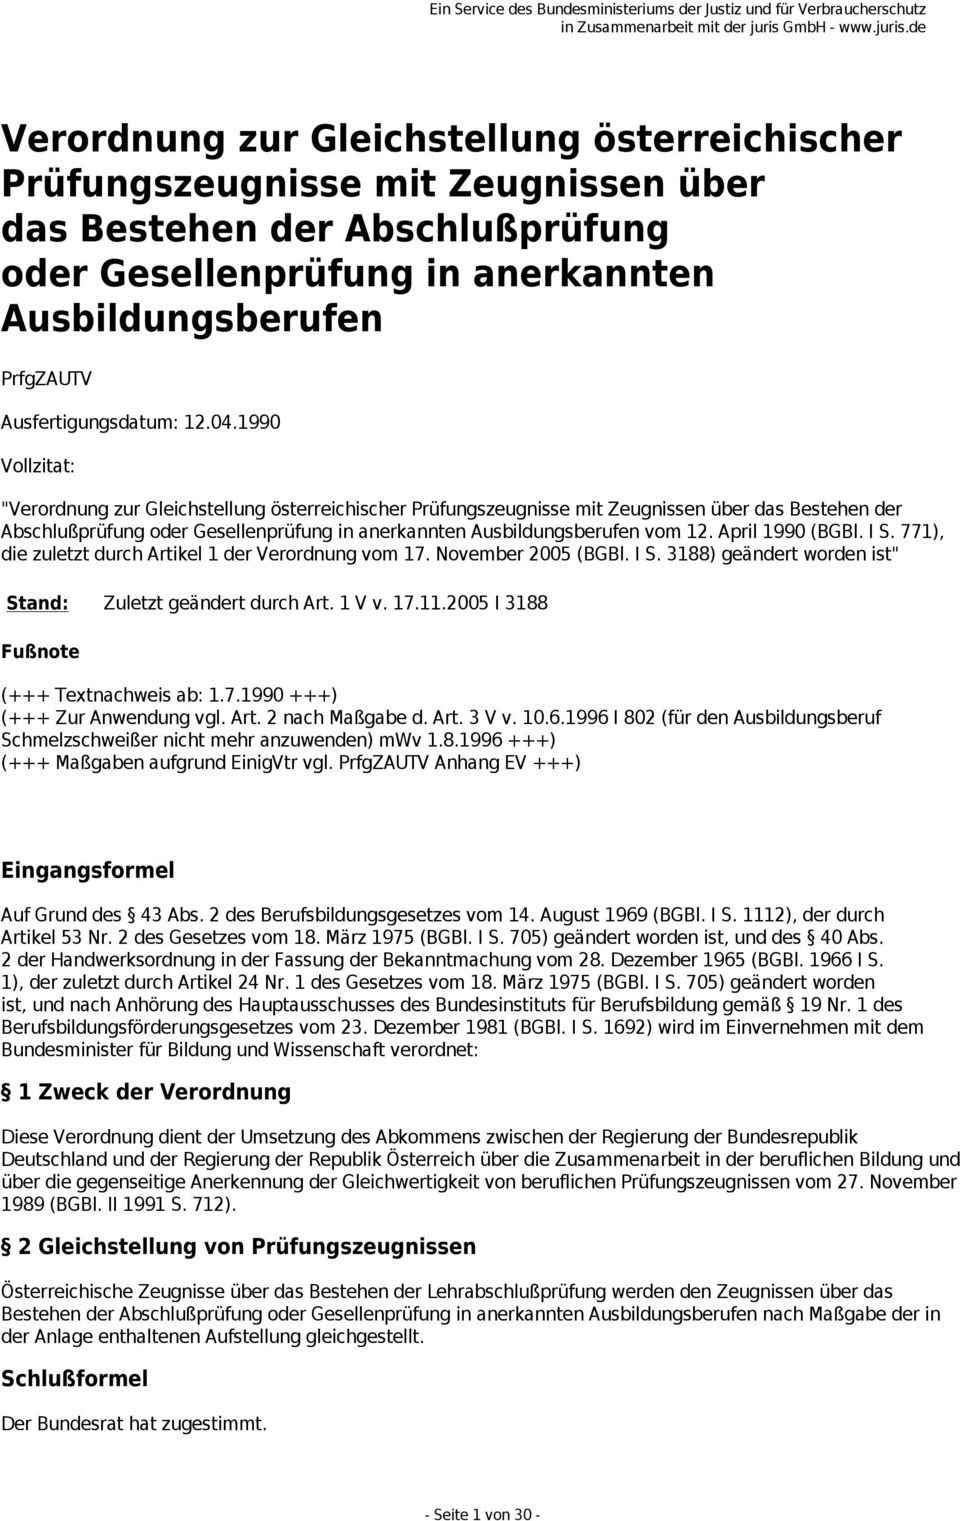 1990 Vollzitat: "Verordnung zur Gleichstellung österreichischer Prüfungszeugnisse mit Zeugnissen über das Bestehen der Abschlußprüfung oder Gesellenprüfung in anerkannten Ausbildungsberufen vom 12.